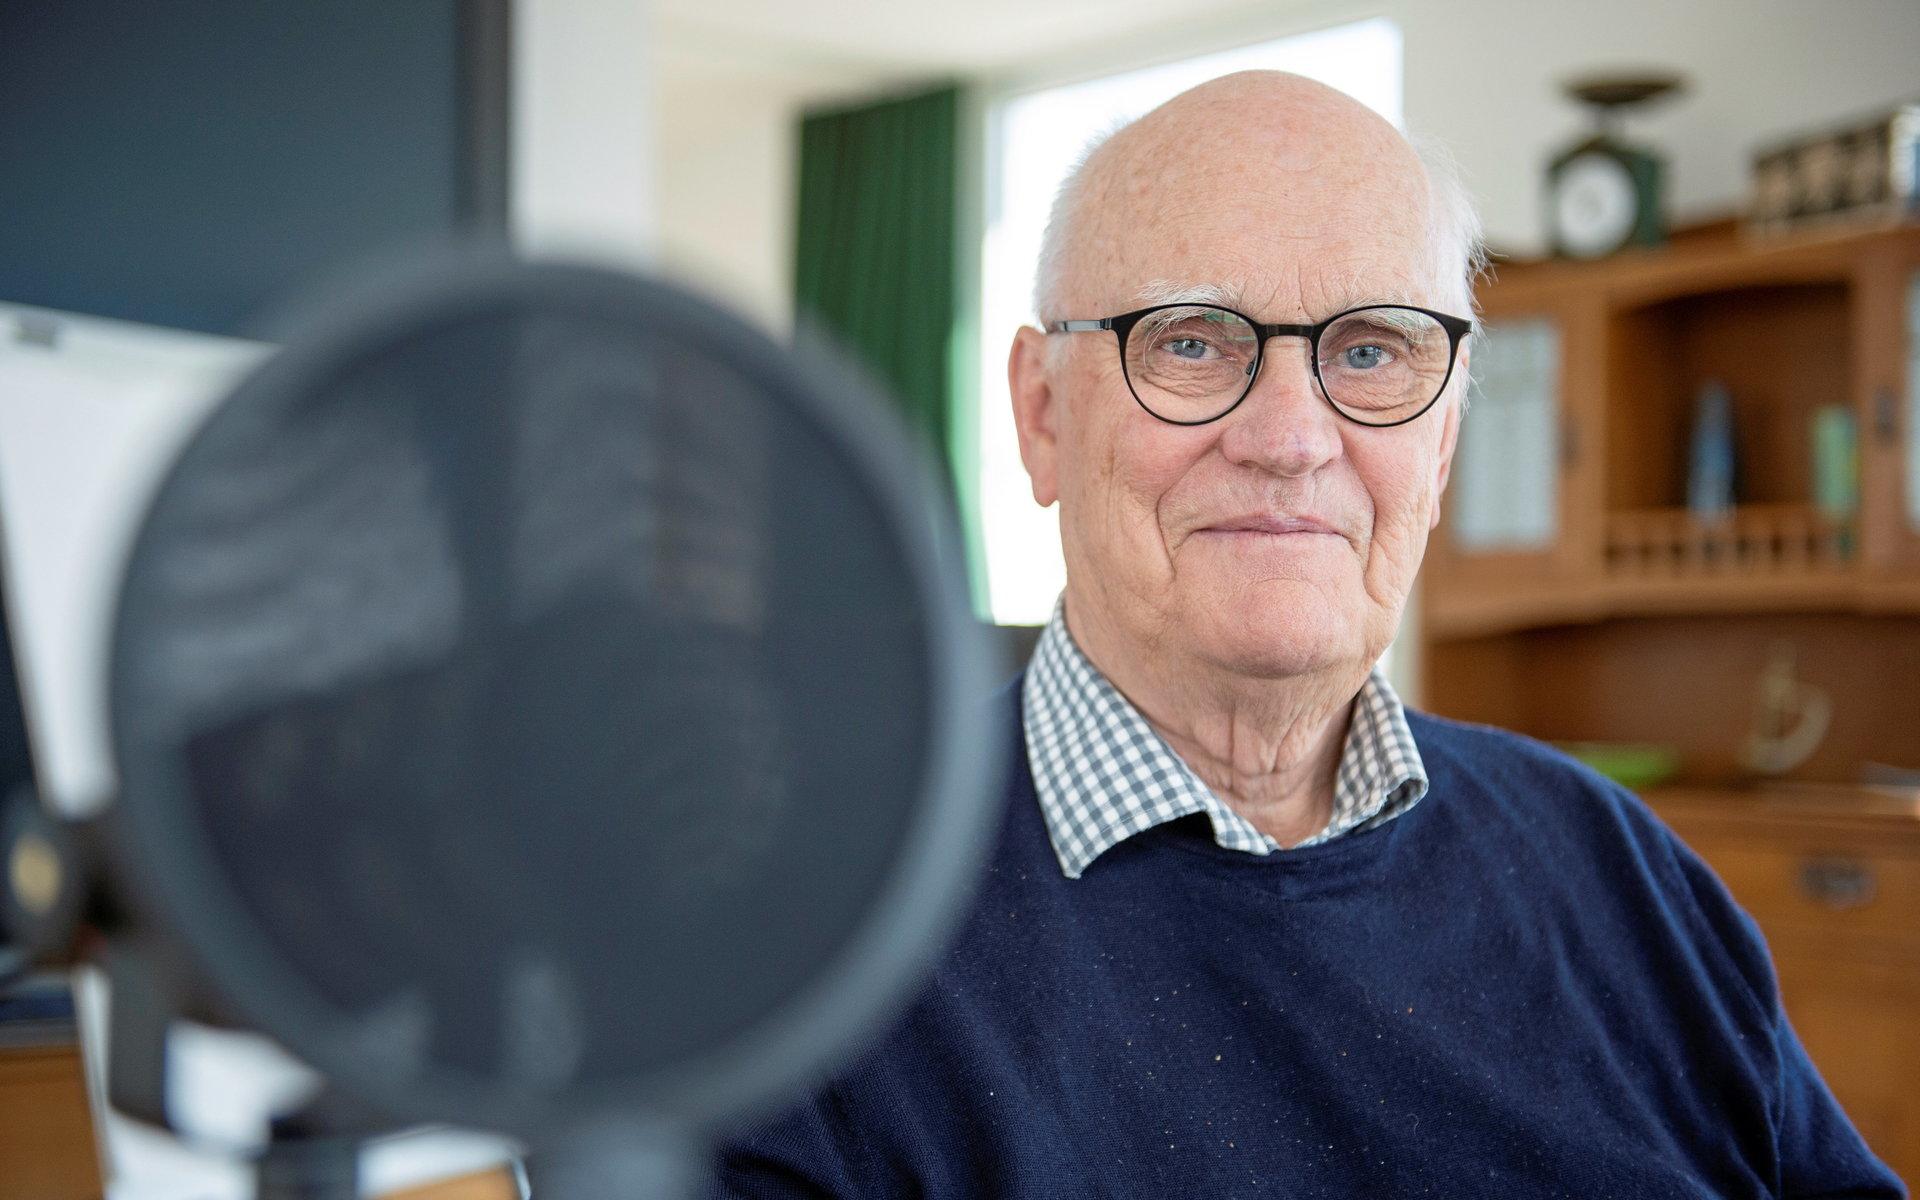 Missa inte heller AT-Podden Intervju med Roger Akelius som finns att lyssna på via alingsastidning.se eller där du brukar lyssna på poddar. 